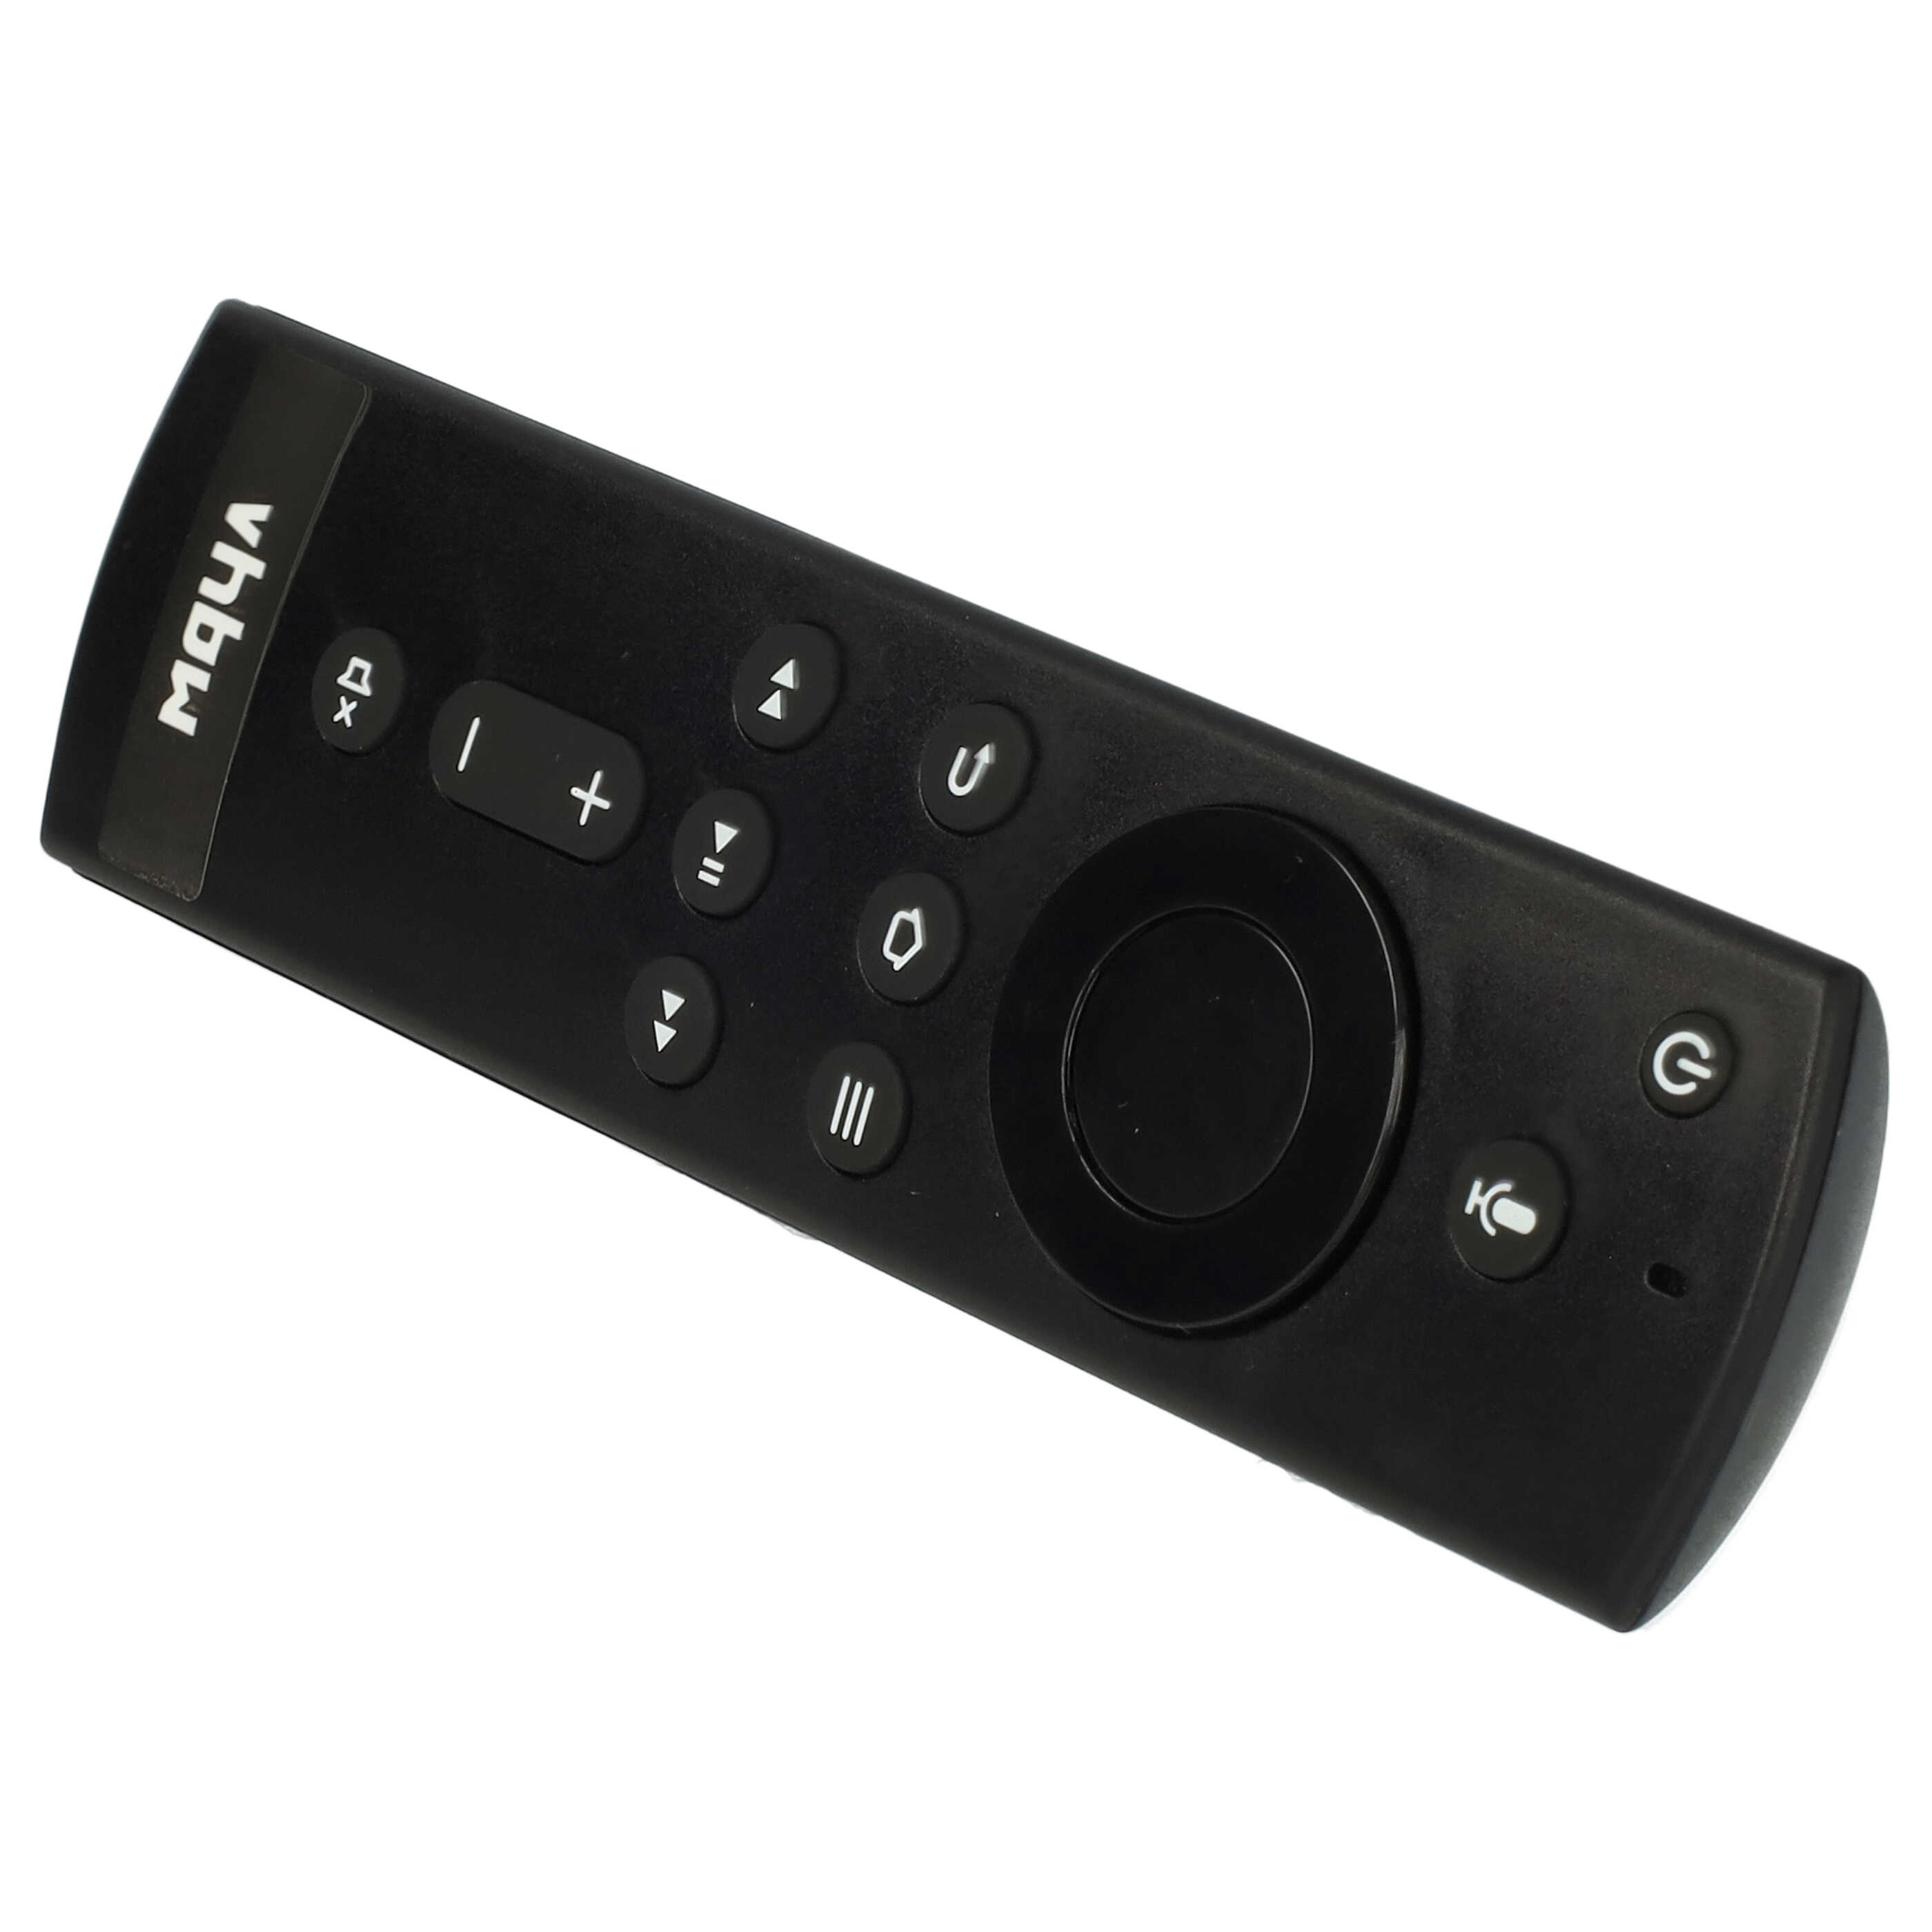 Remote Control replaces Amazon L5B83H for Amazon Streaming Box, Internet-TV Box